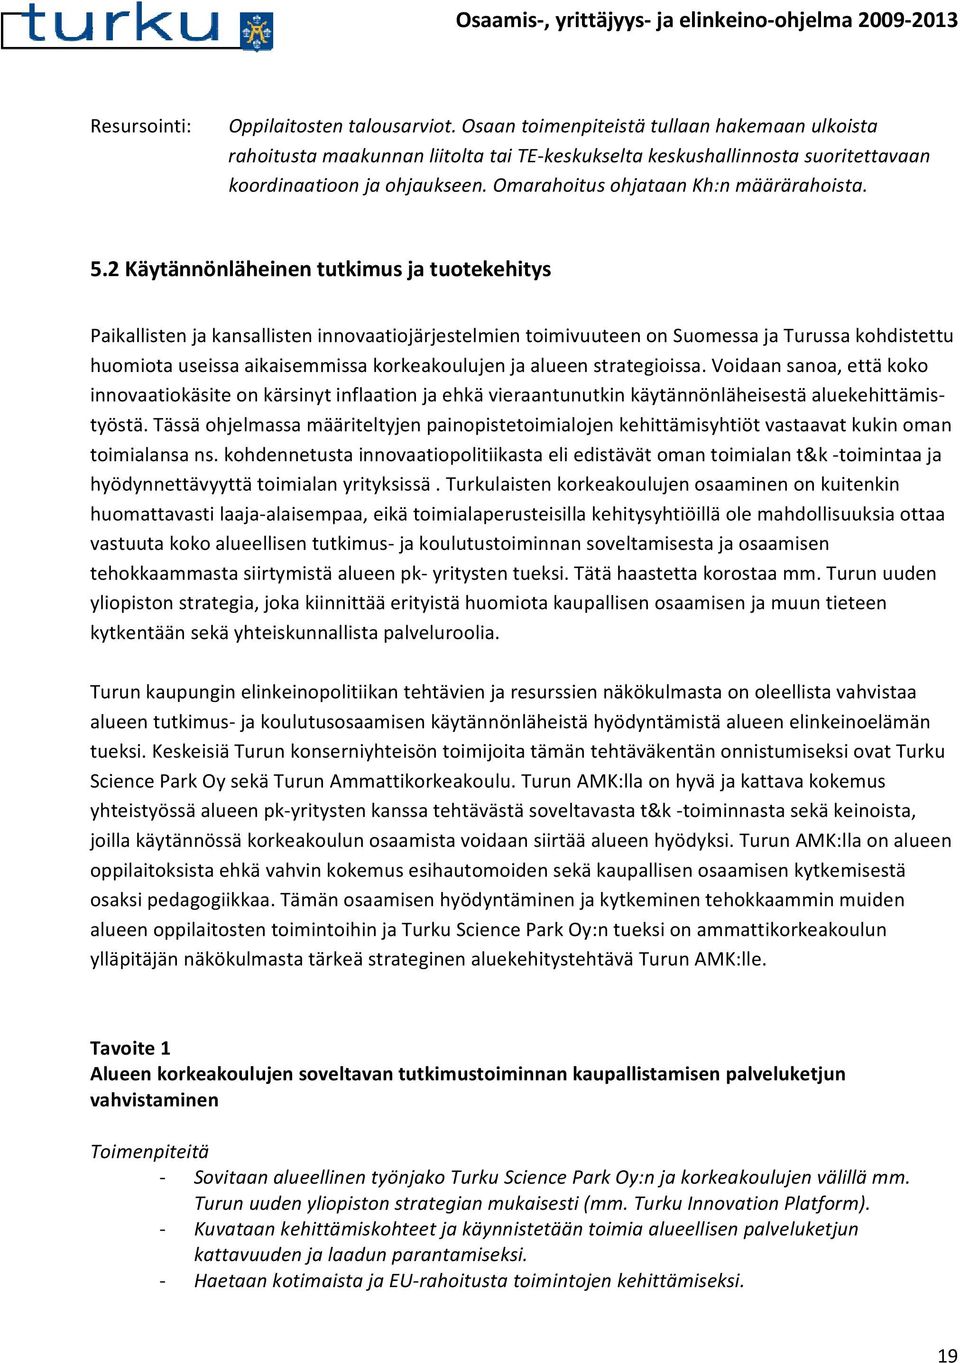 2 Käytännönläheinen tutkimus ja tuotekehitys Paikallisten ja kansallisten innovaatiojärjestelmien toimivuuteen on Suomessa ja Turussa kohdistettu huomiota useissa aikaisemmissa korkeakoulujen ja